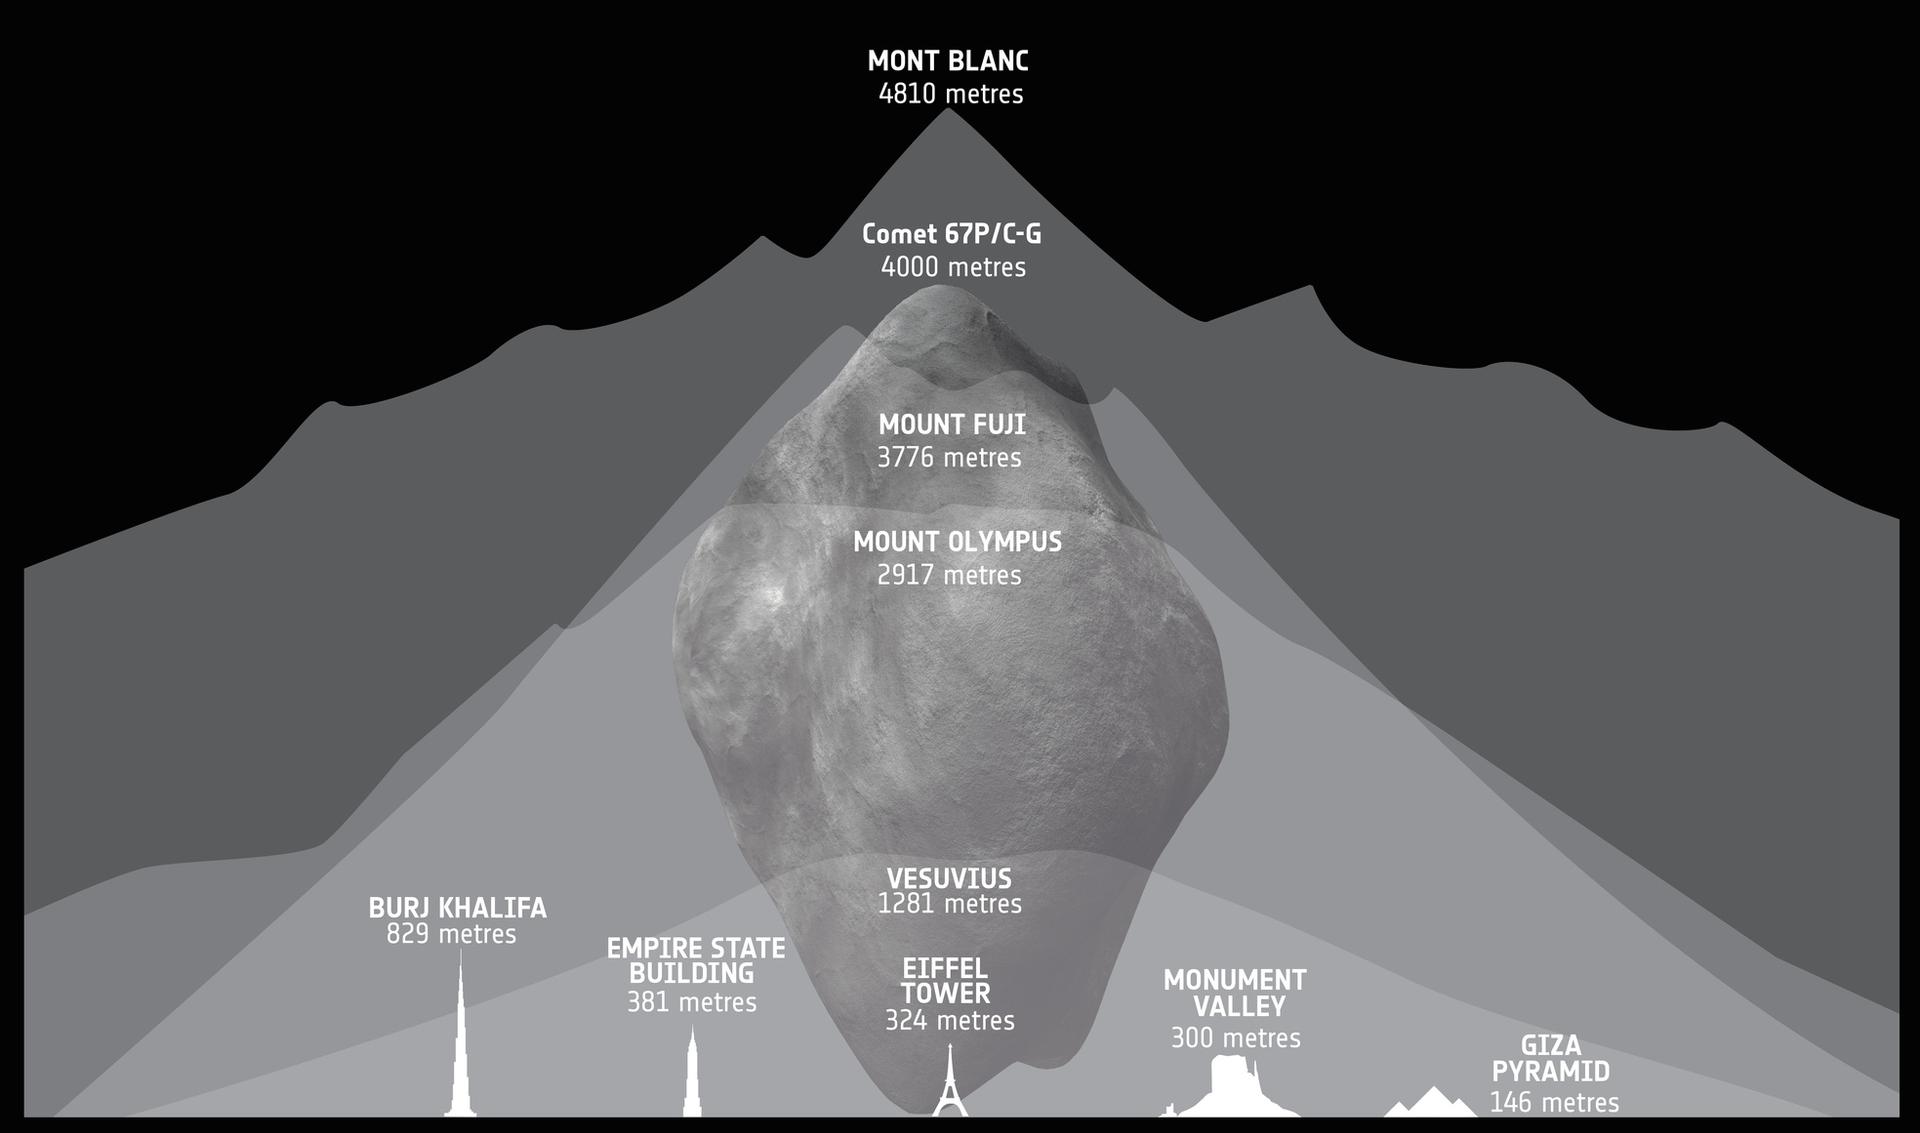 Comet 67P/Churyumov-Gerasimenko compared to mountains